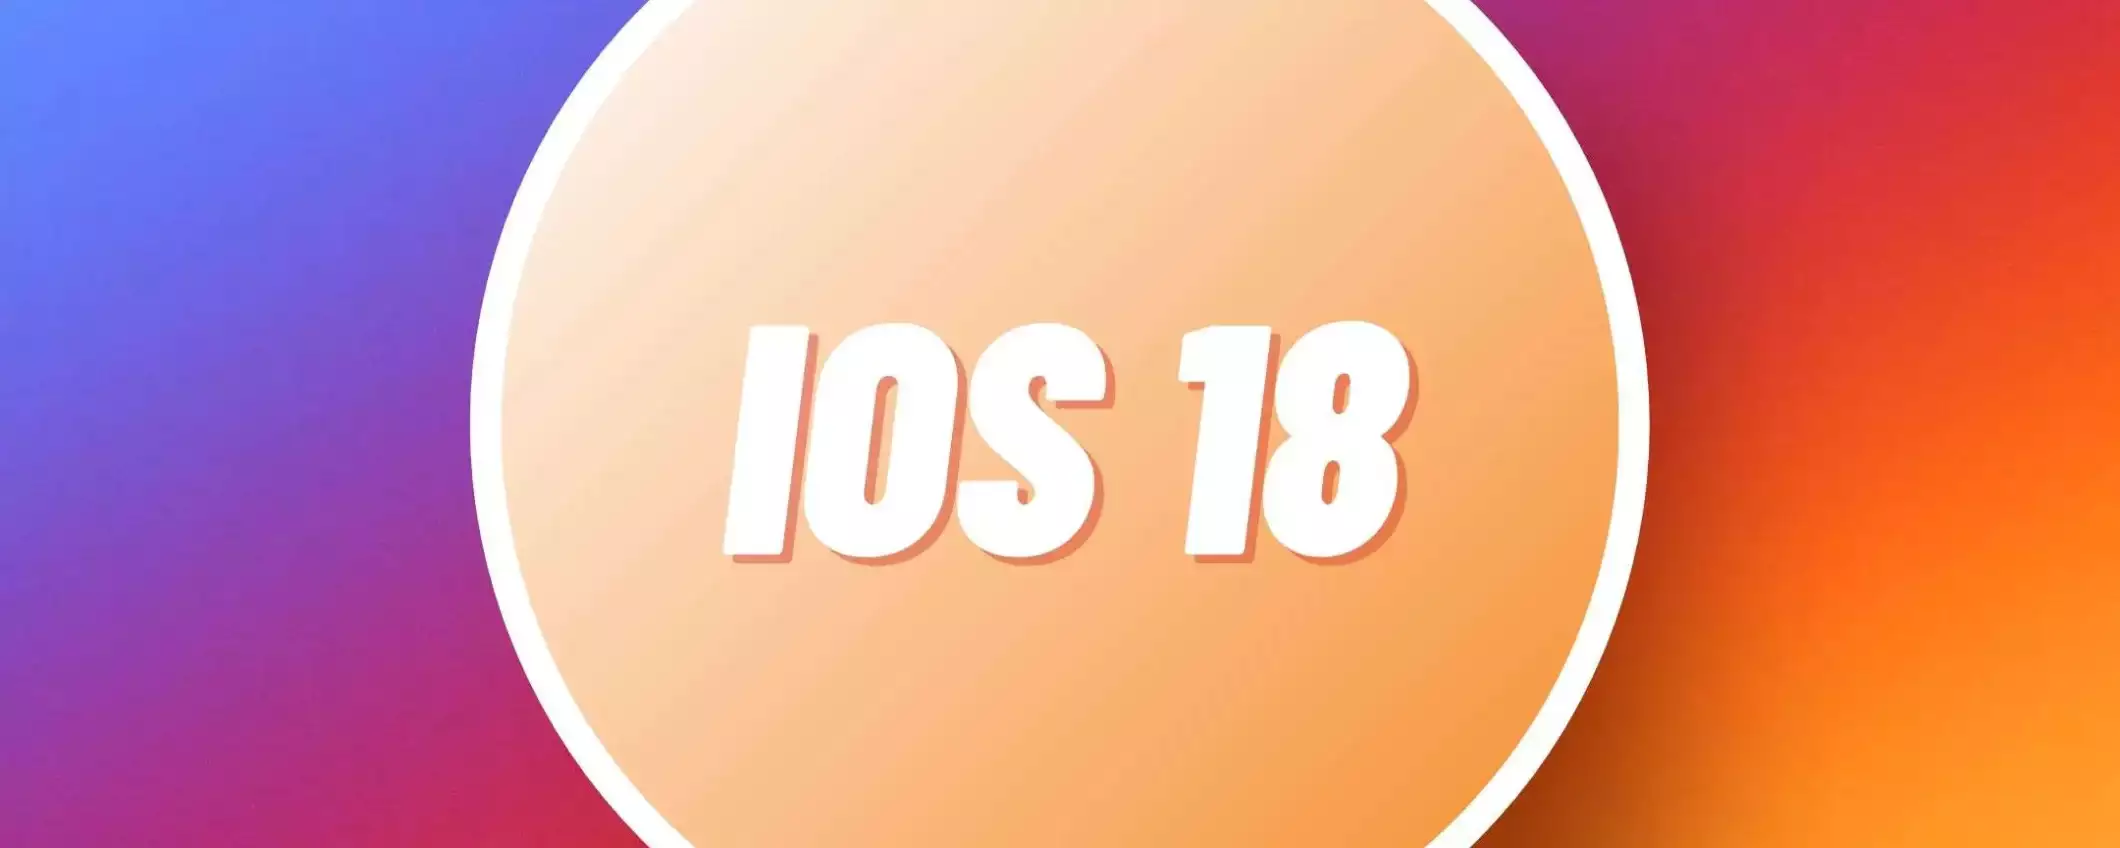 iOS 18: ecco quali saranno gli iPhone che si aggiorneranno